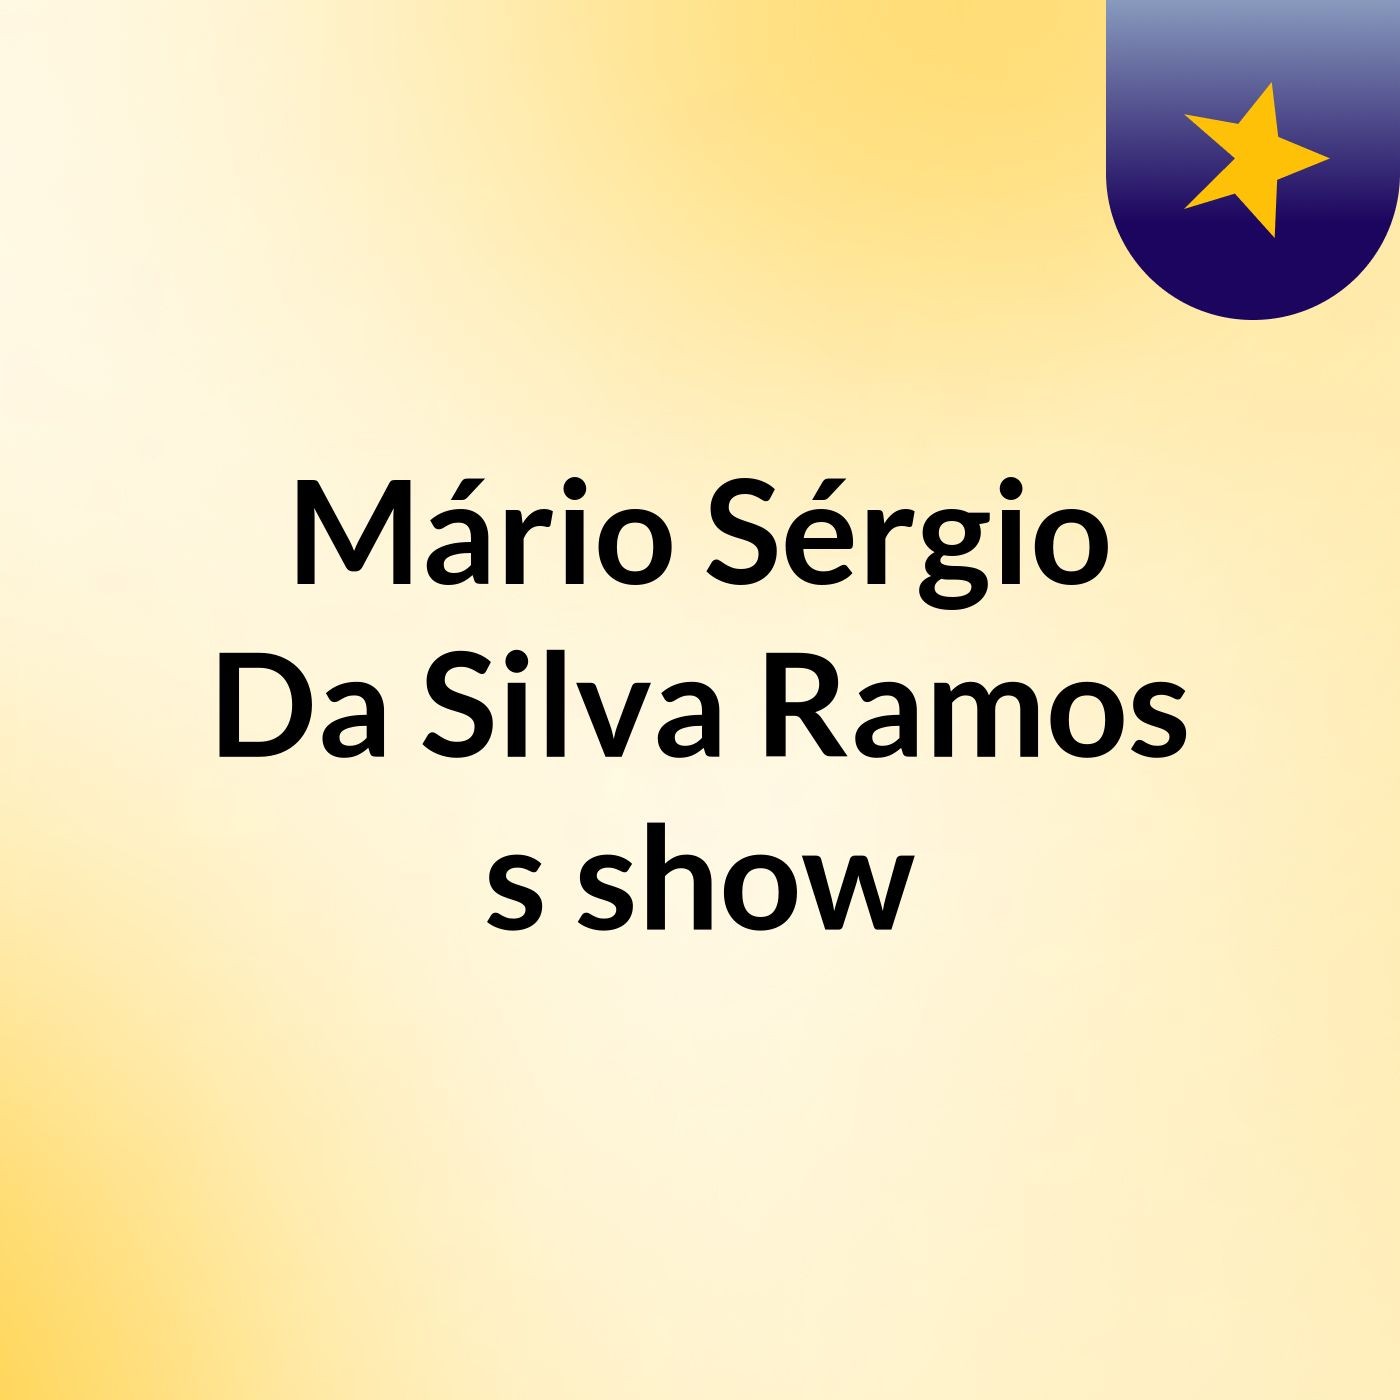 Mário Sérgio Da Silva Ramos's show